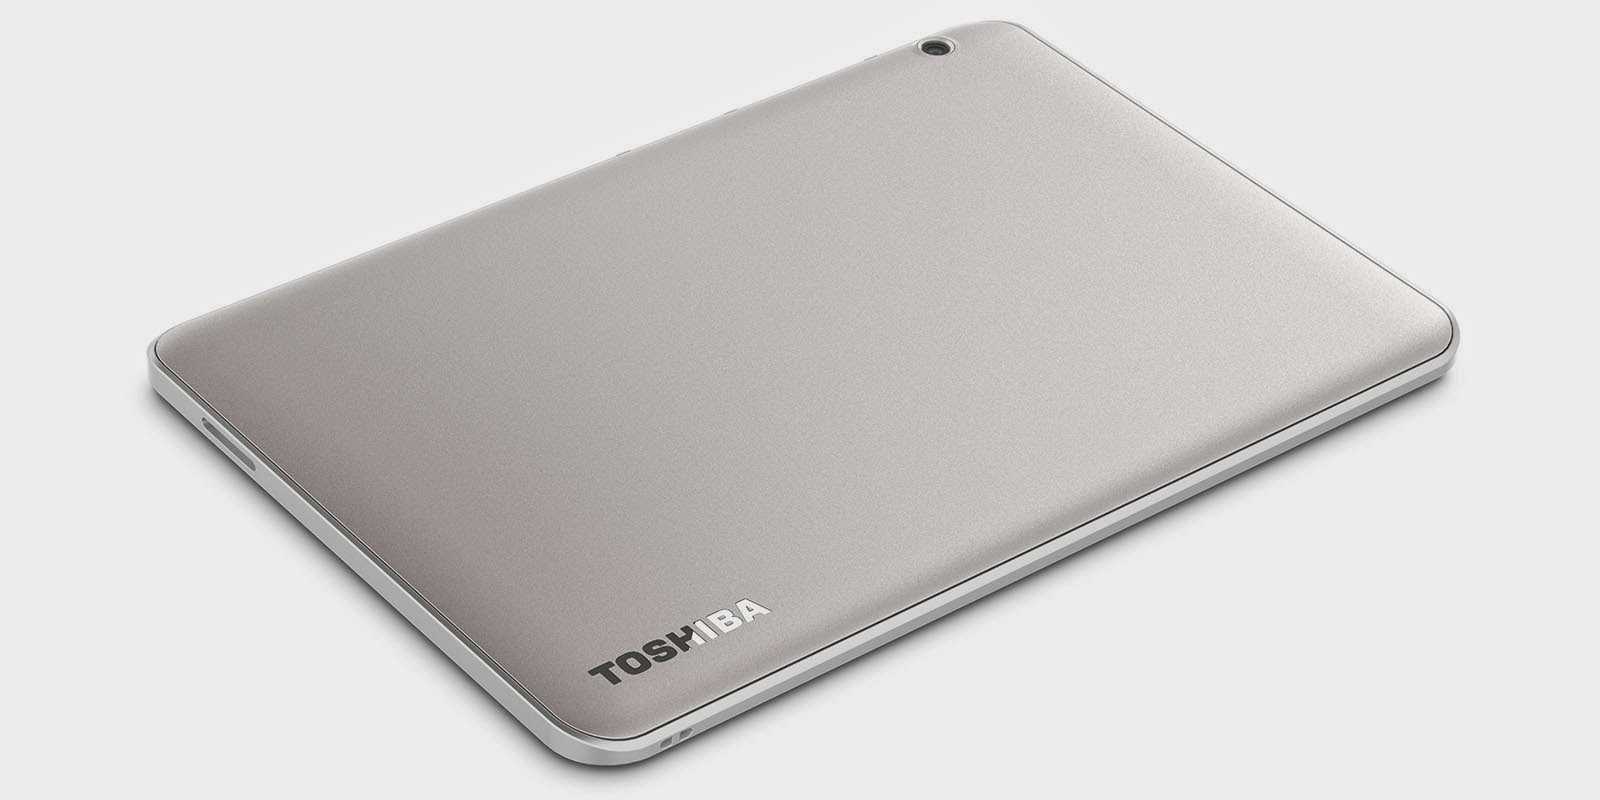 Планшет Toshiba Encore - подробные характеристики обзоры видео фото Цены в интернет-магазинах где можно купить планшет Toshiba Encore